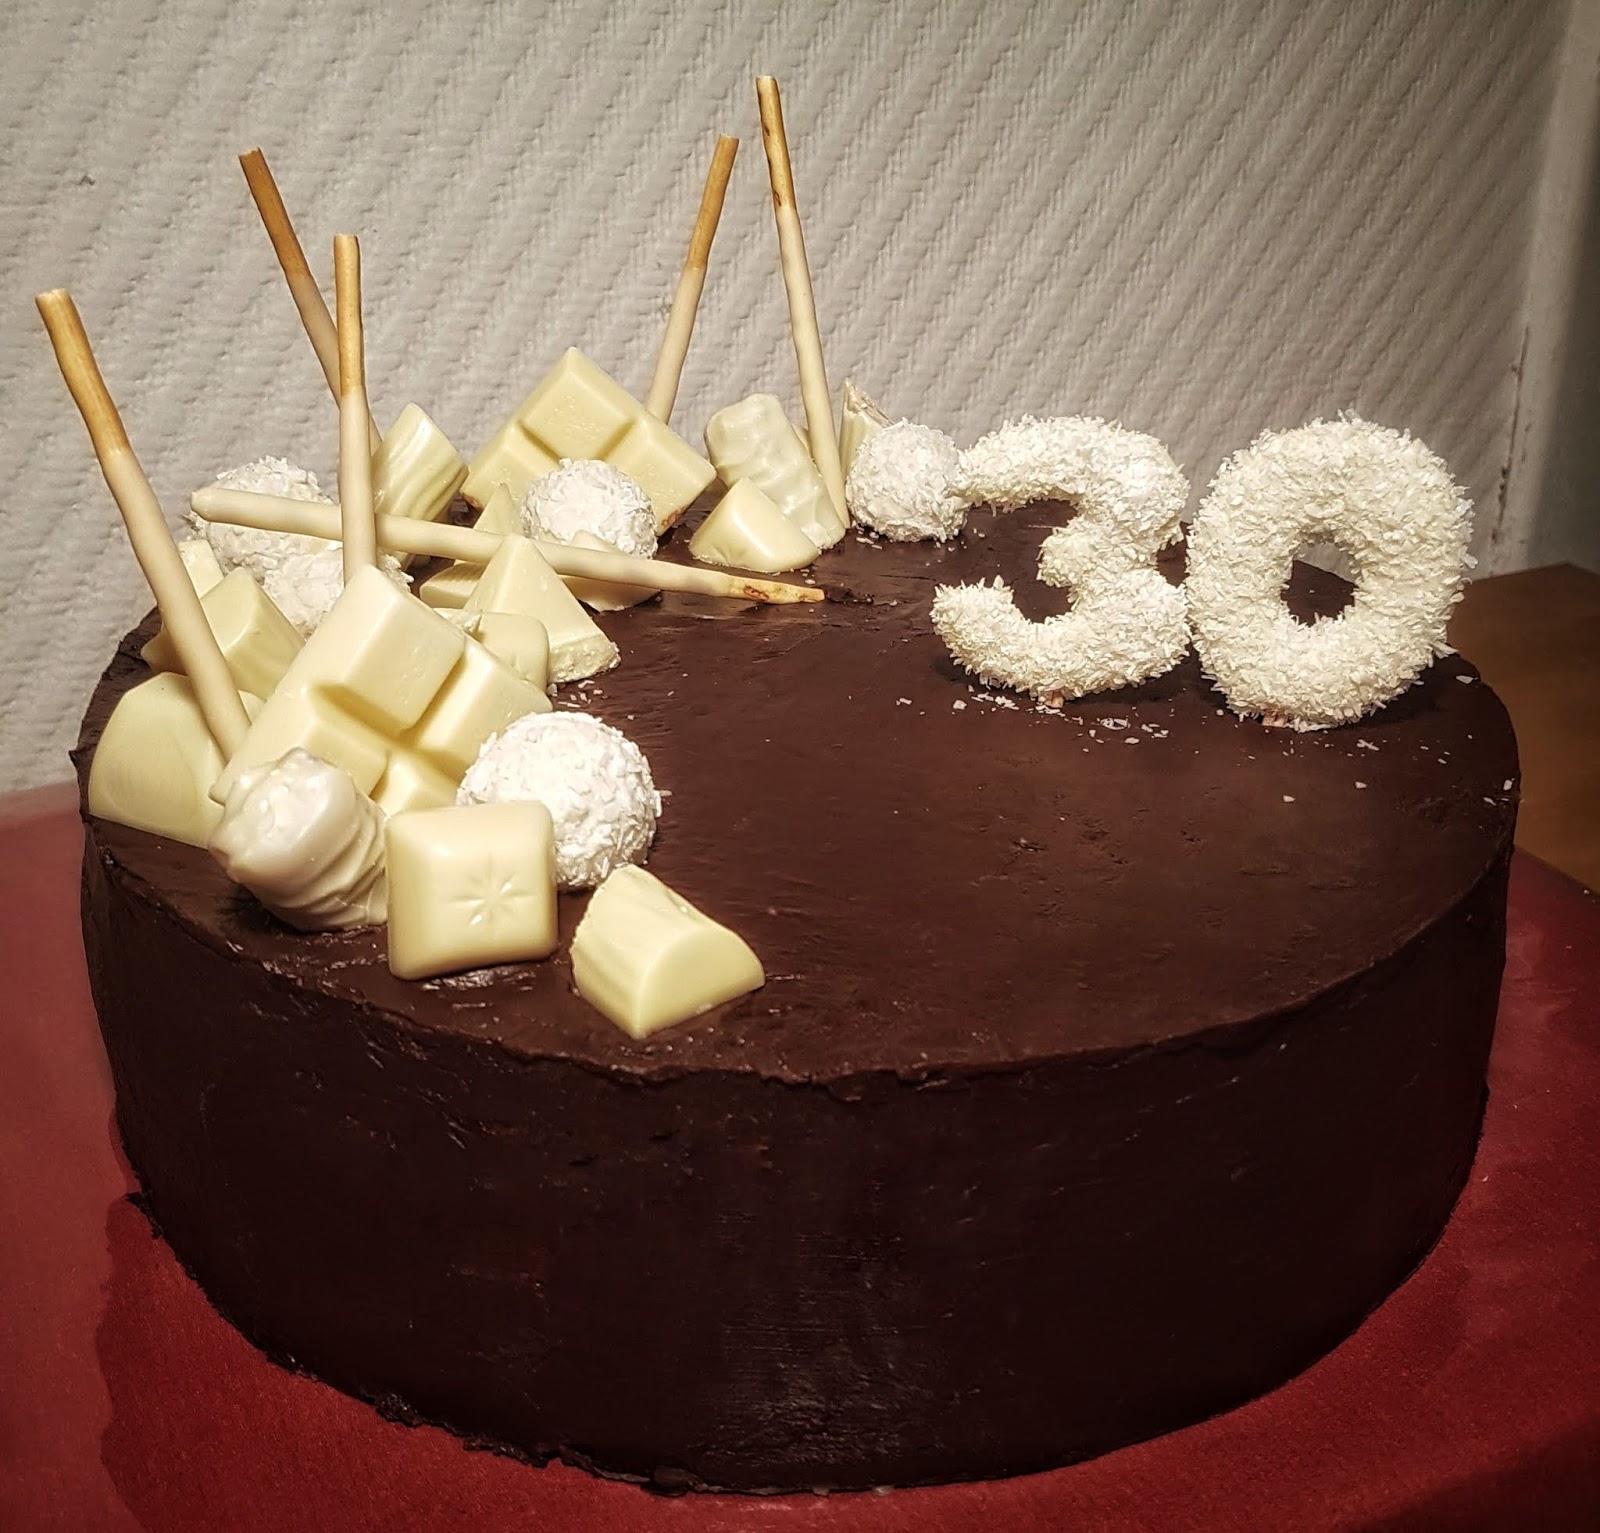 Sandy S Kitchendreams Torte Zum 30 Geburtstag